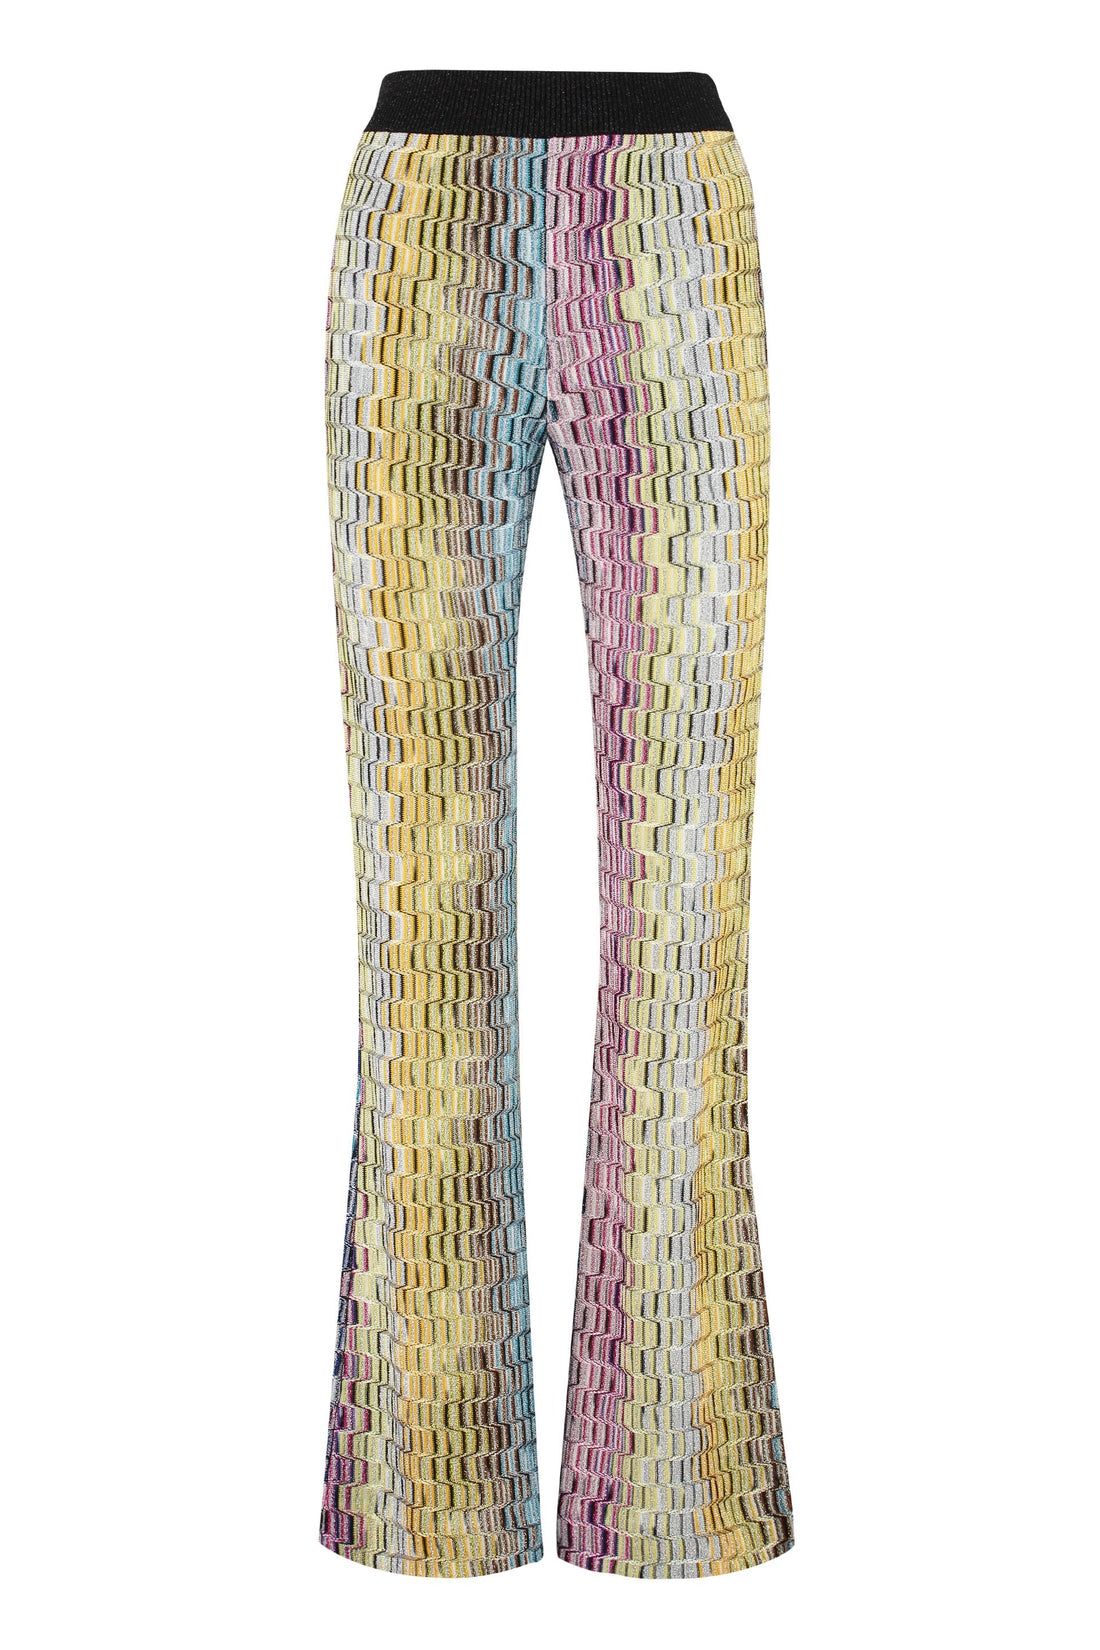 Missoni-OUTLET-SALE-Lurex knit trousers-ARCHIVIST